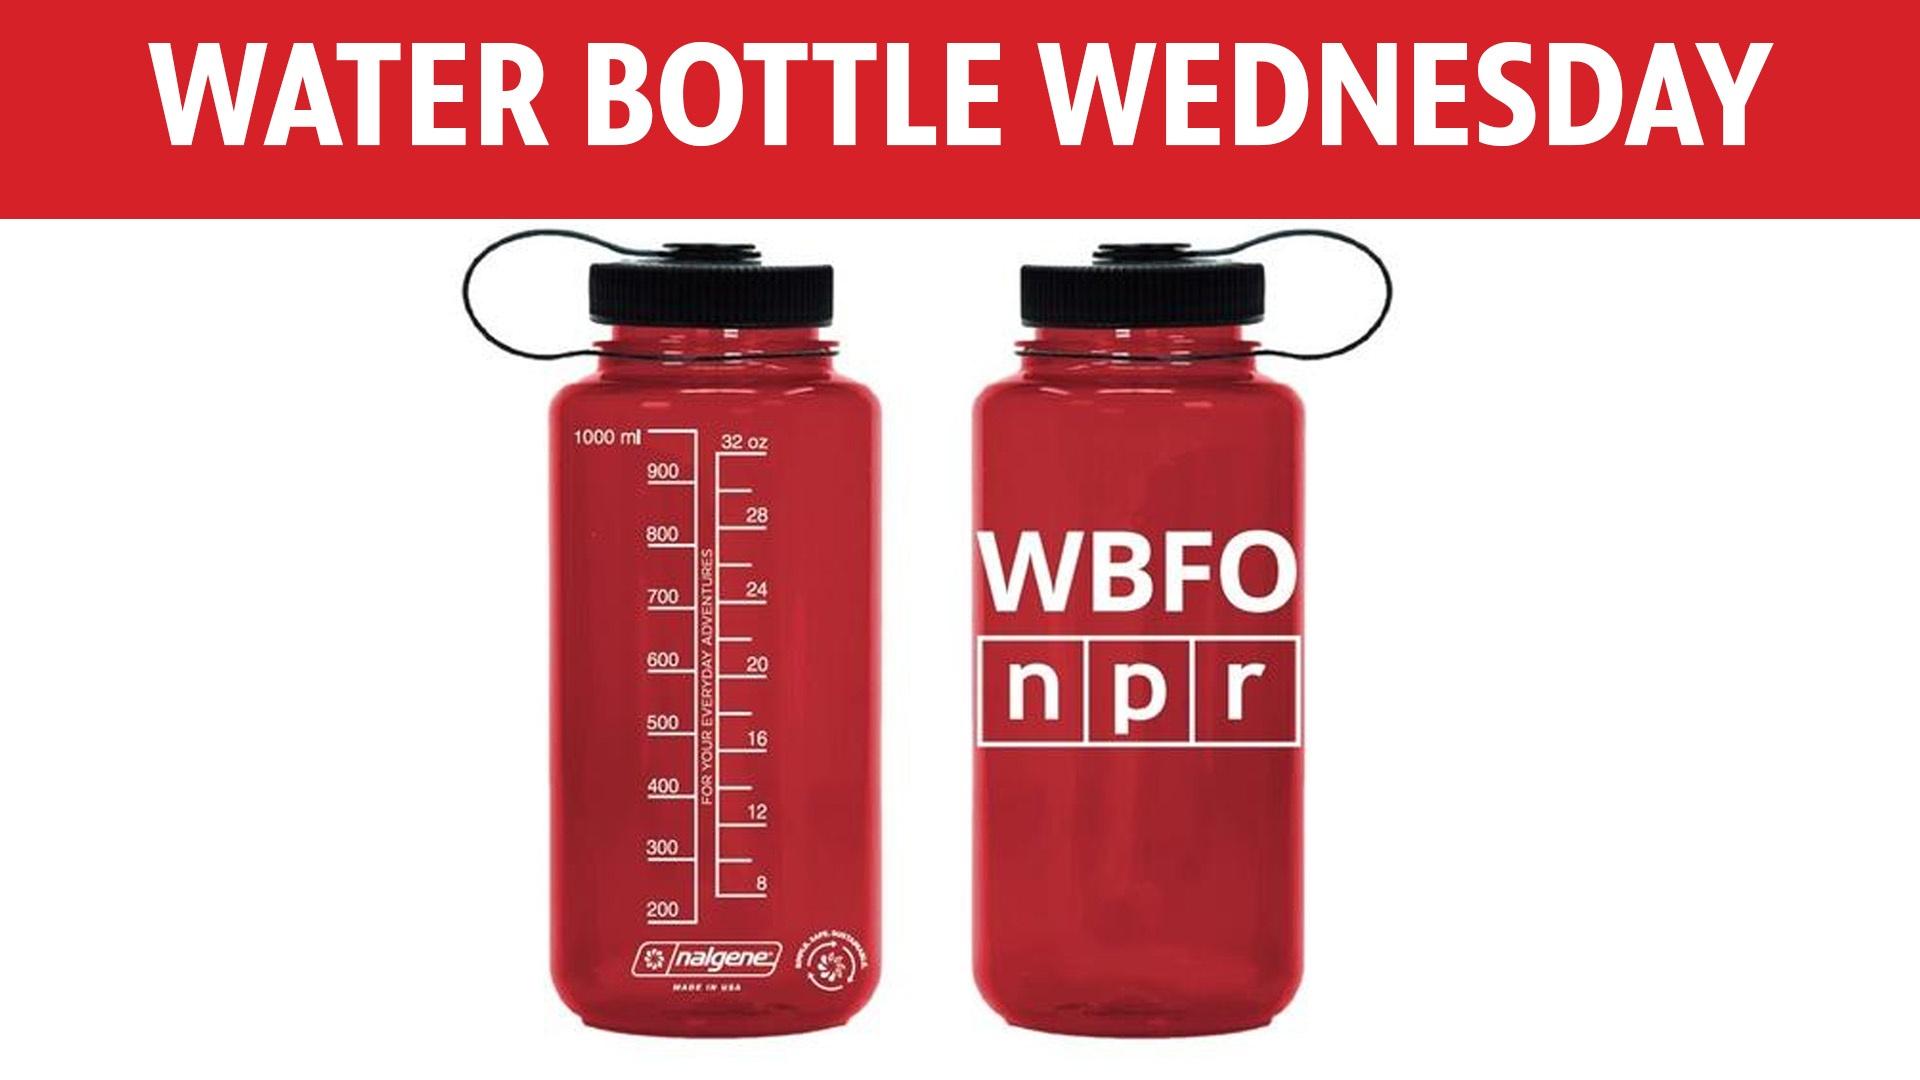 WBFO branded water bottle